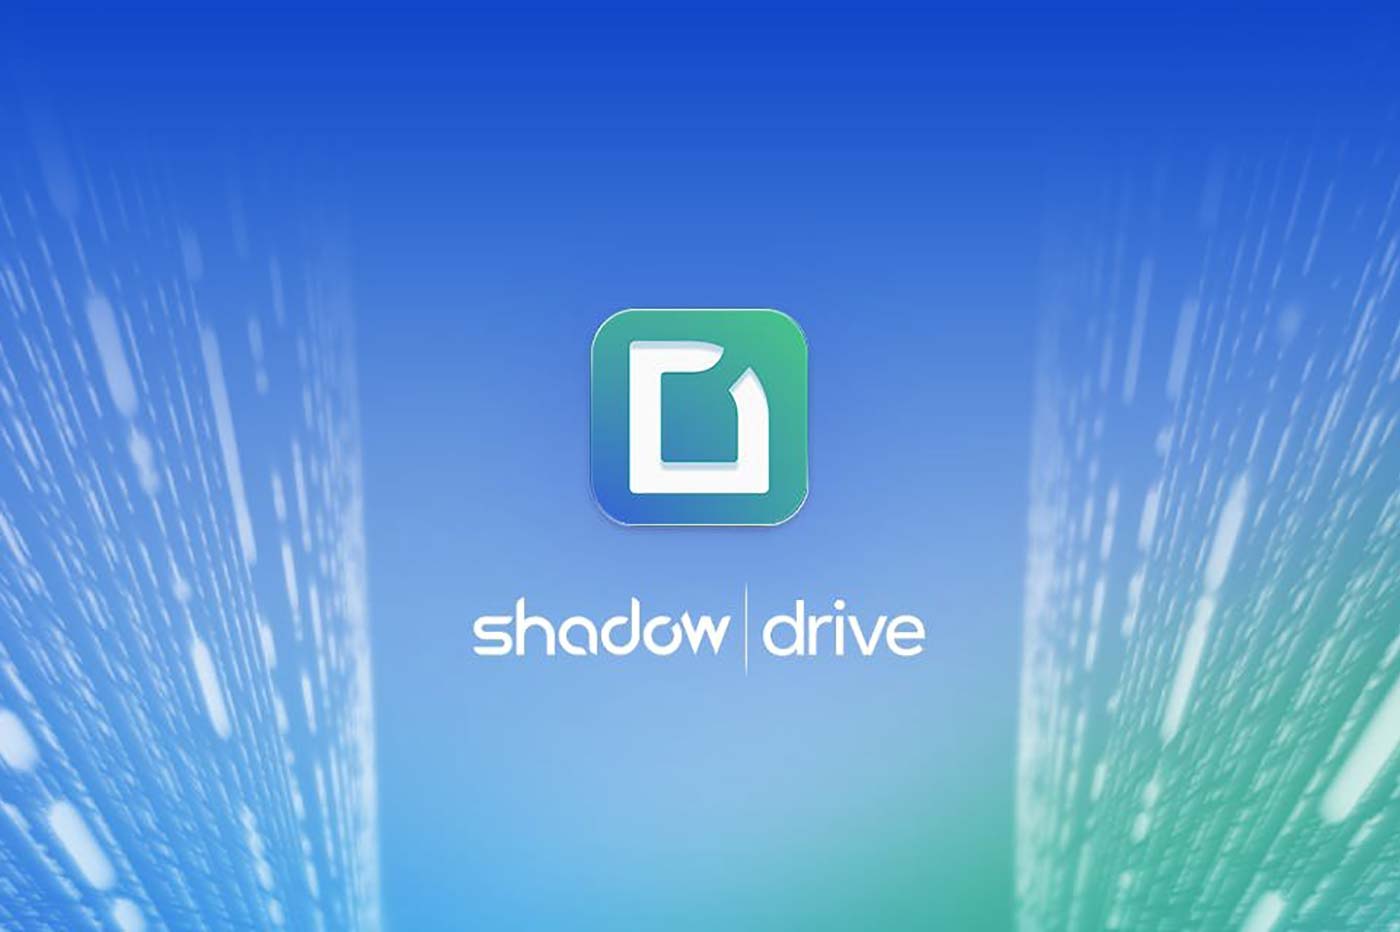 Shadow Drive